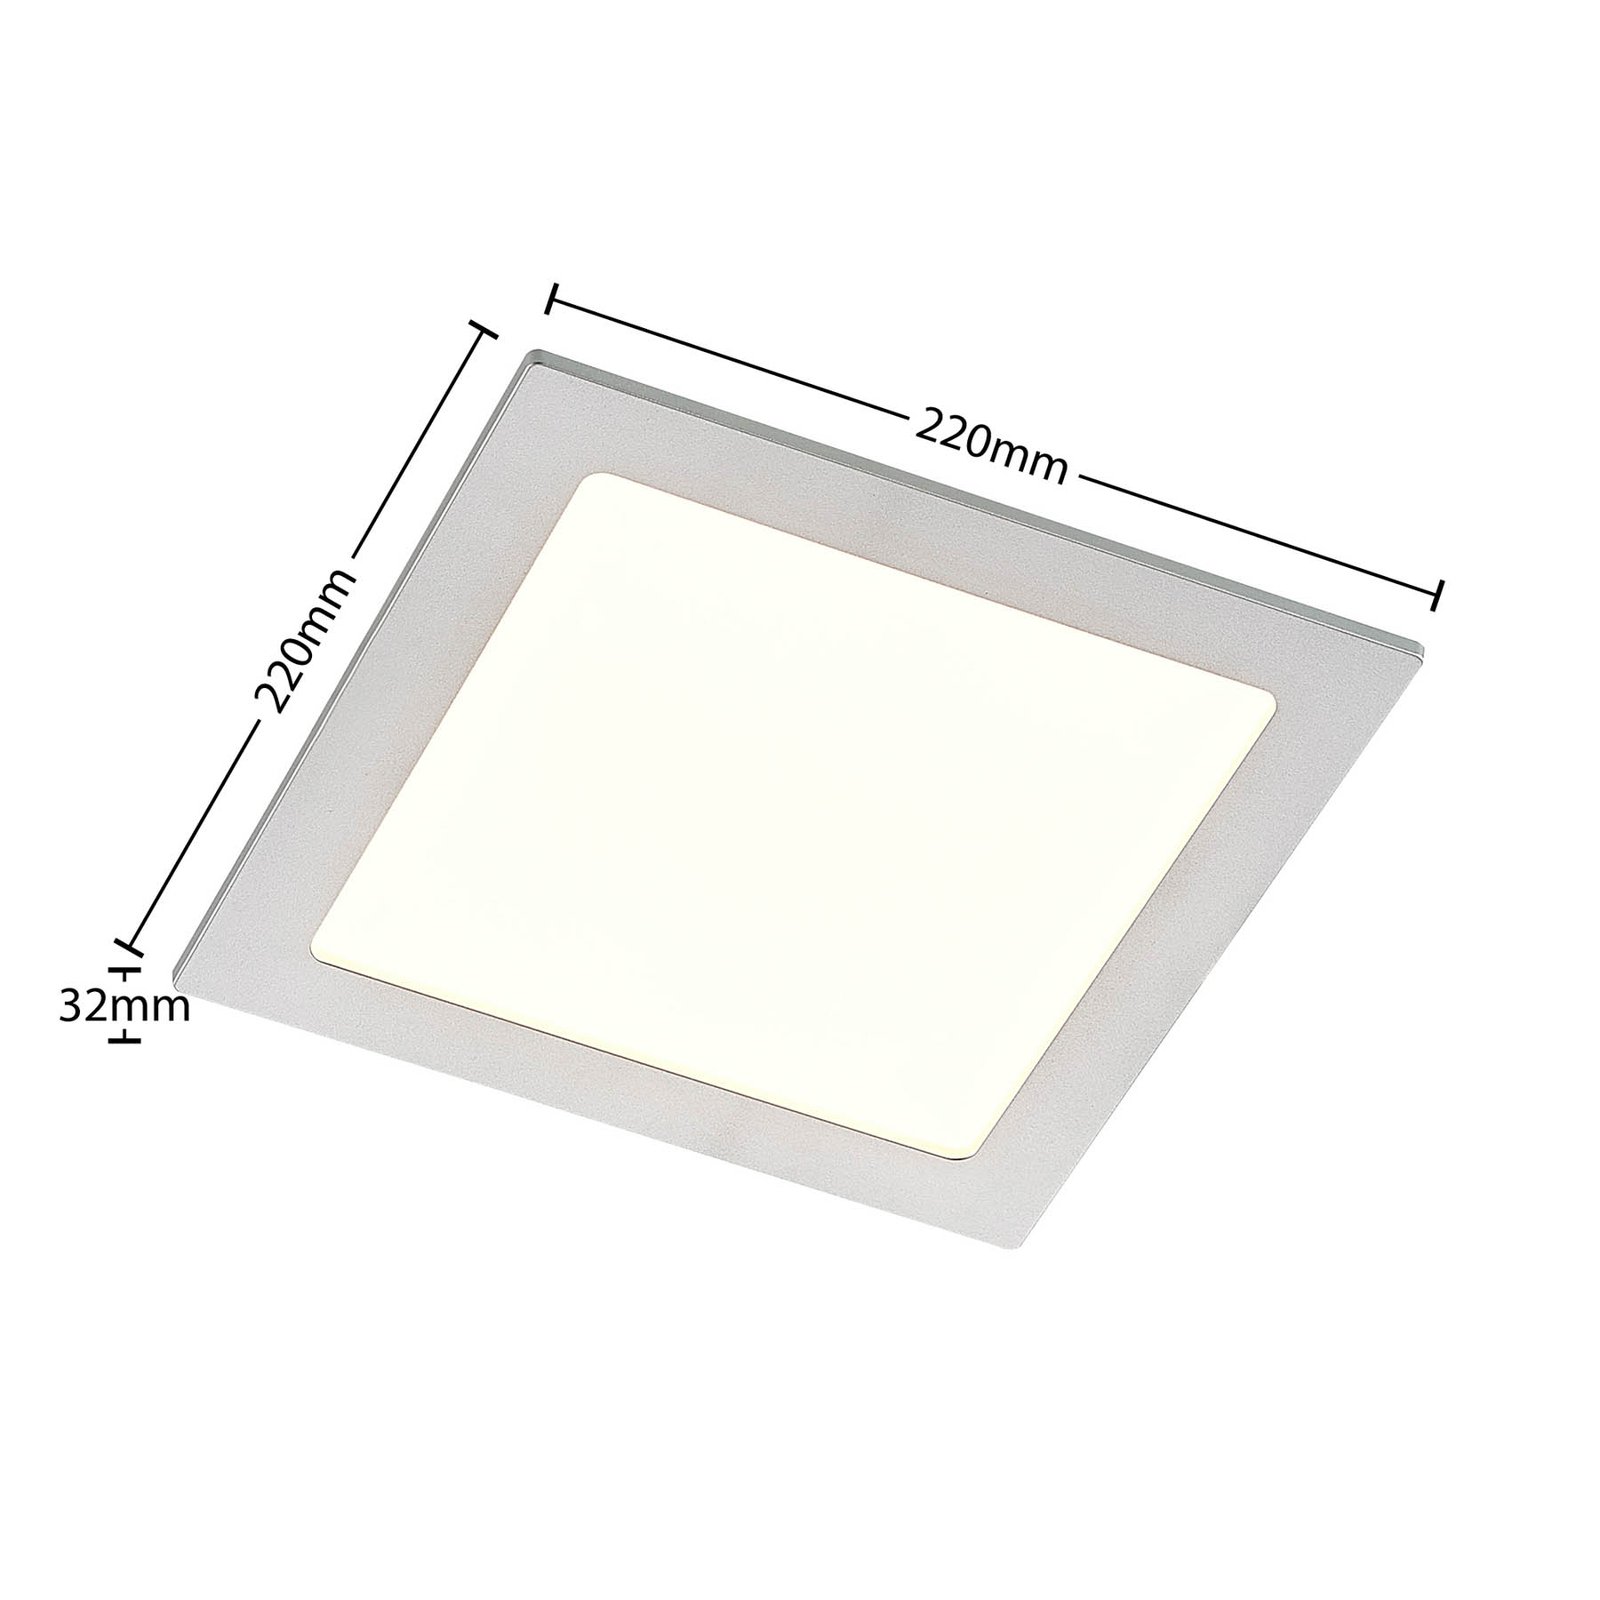 Prios Helina LED-downlight, sølv, 22 cm, 24 W